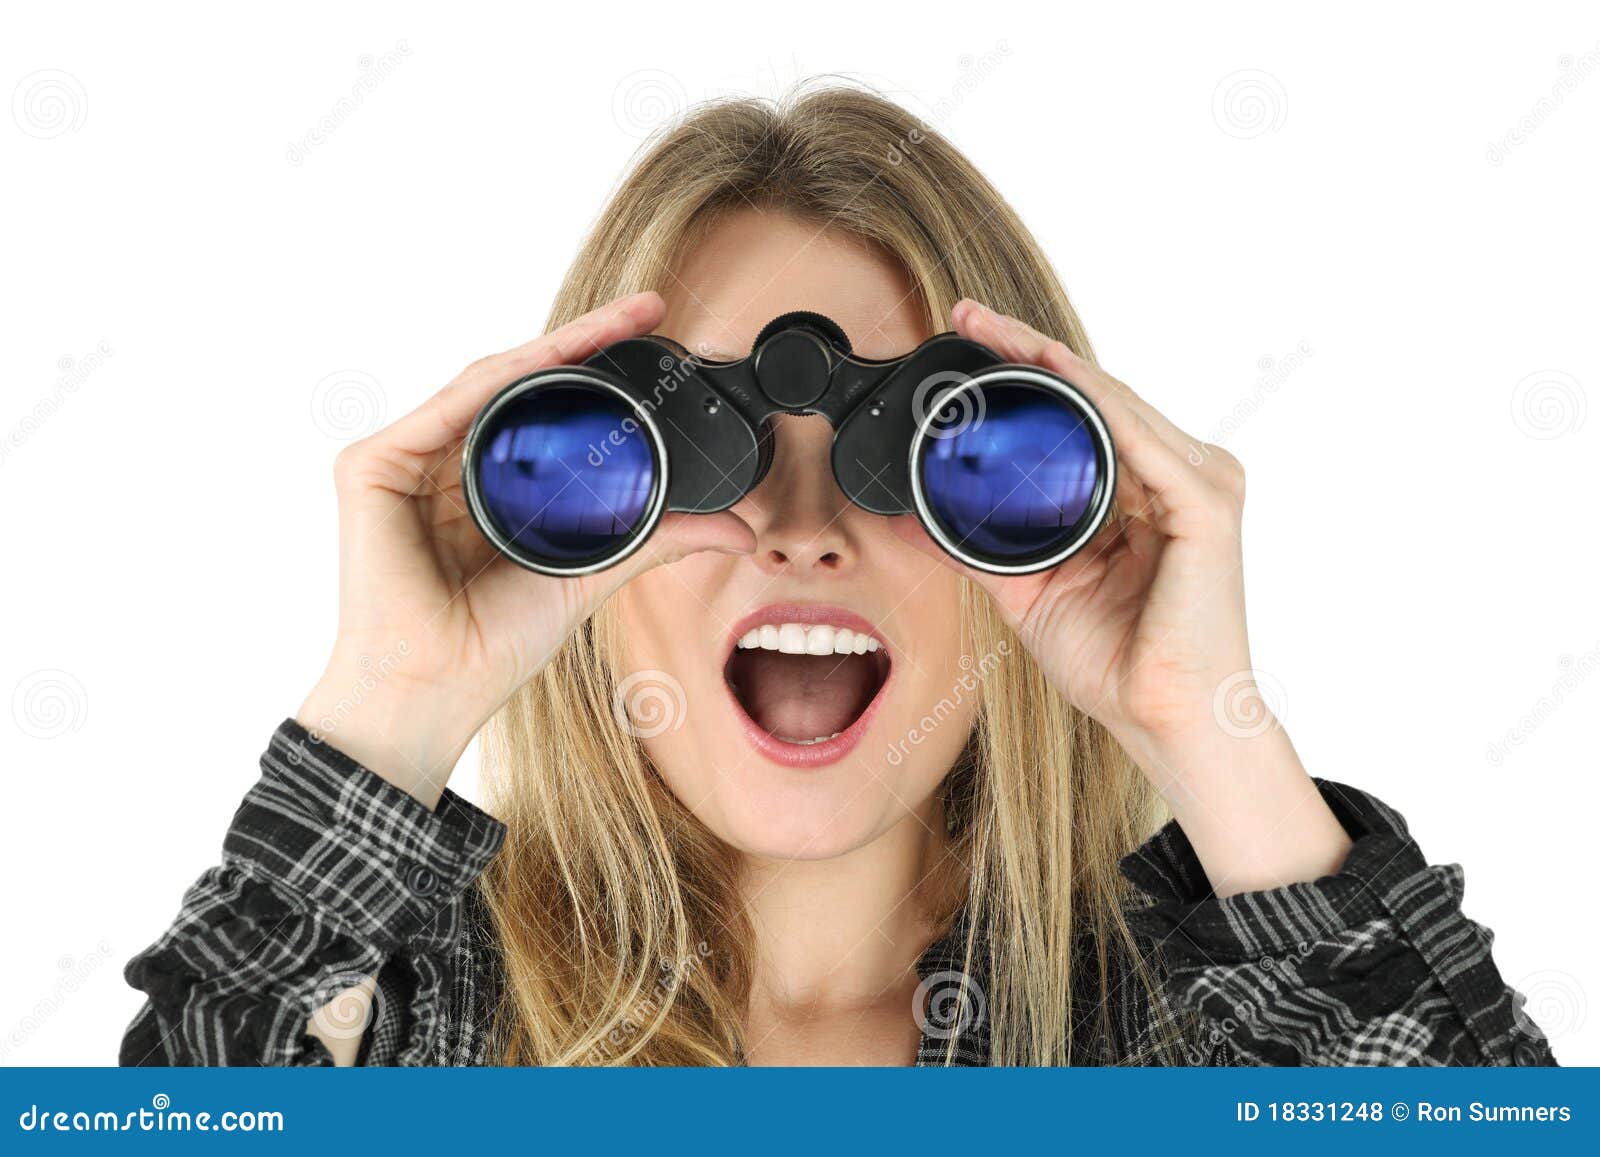 woman with binoculars looking shocked